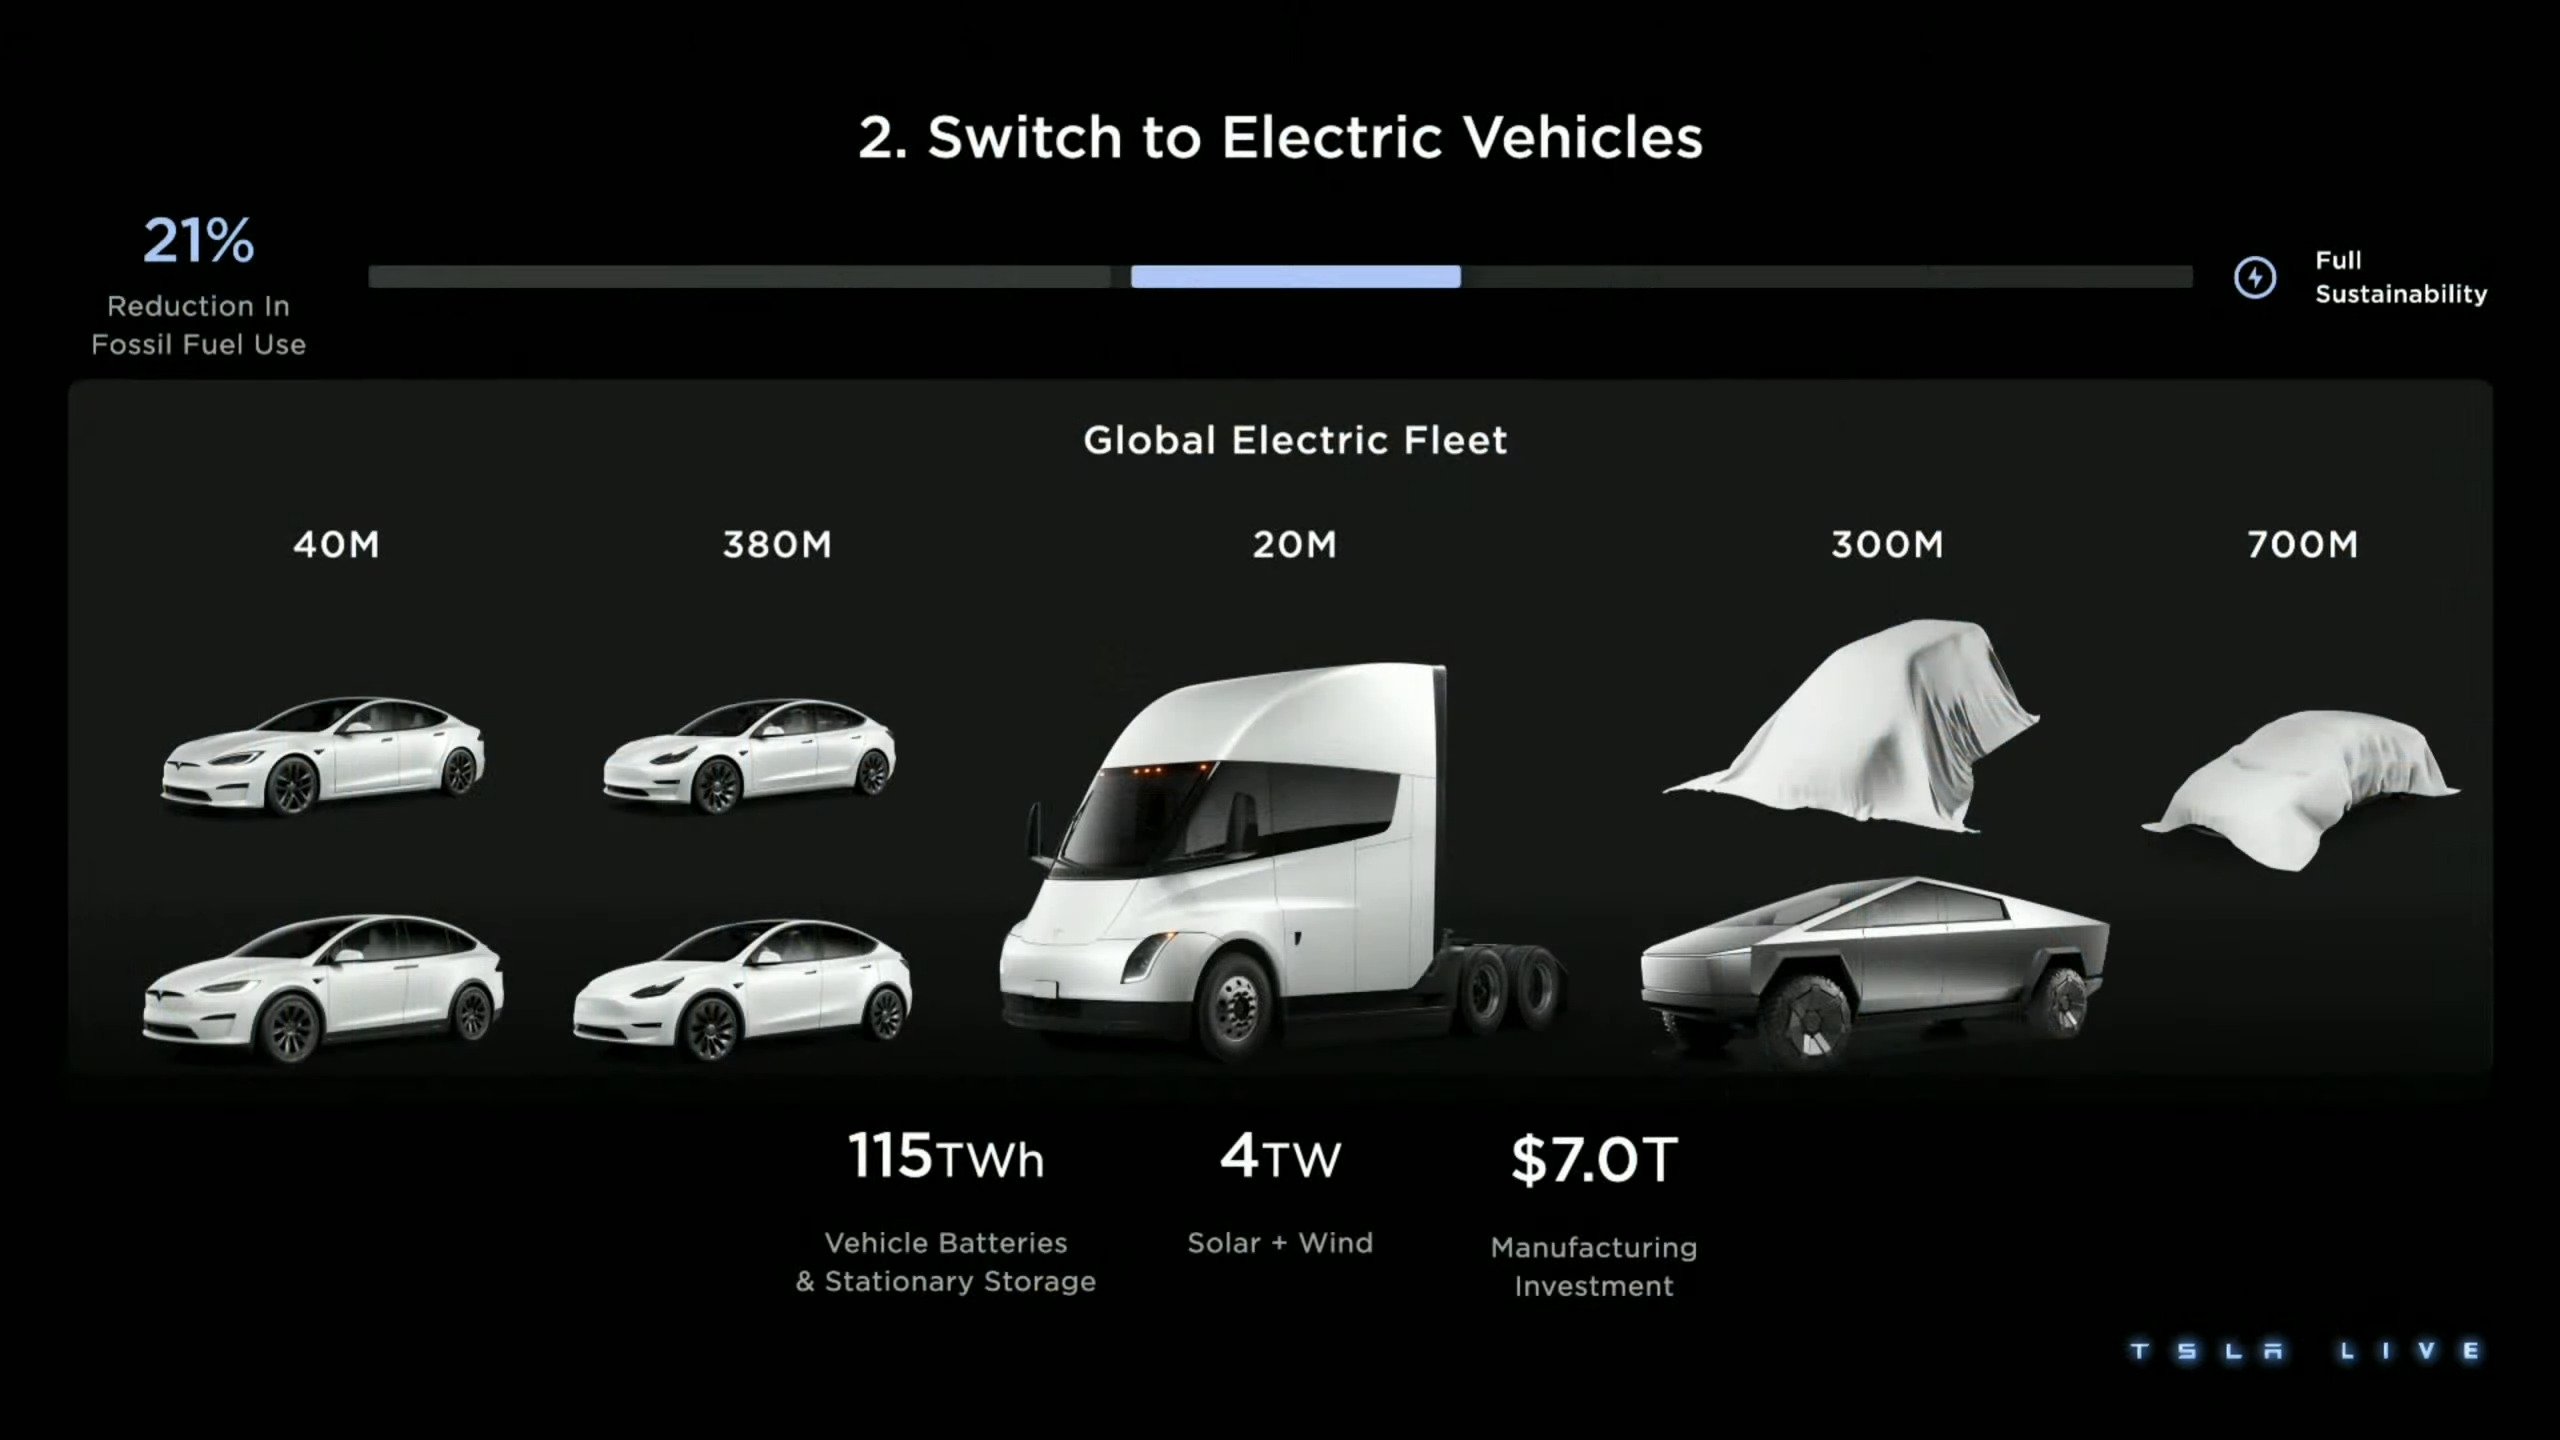 Voitures électriques Tesla : modèles et prix - IZI by EDF